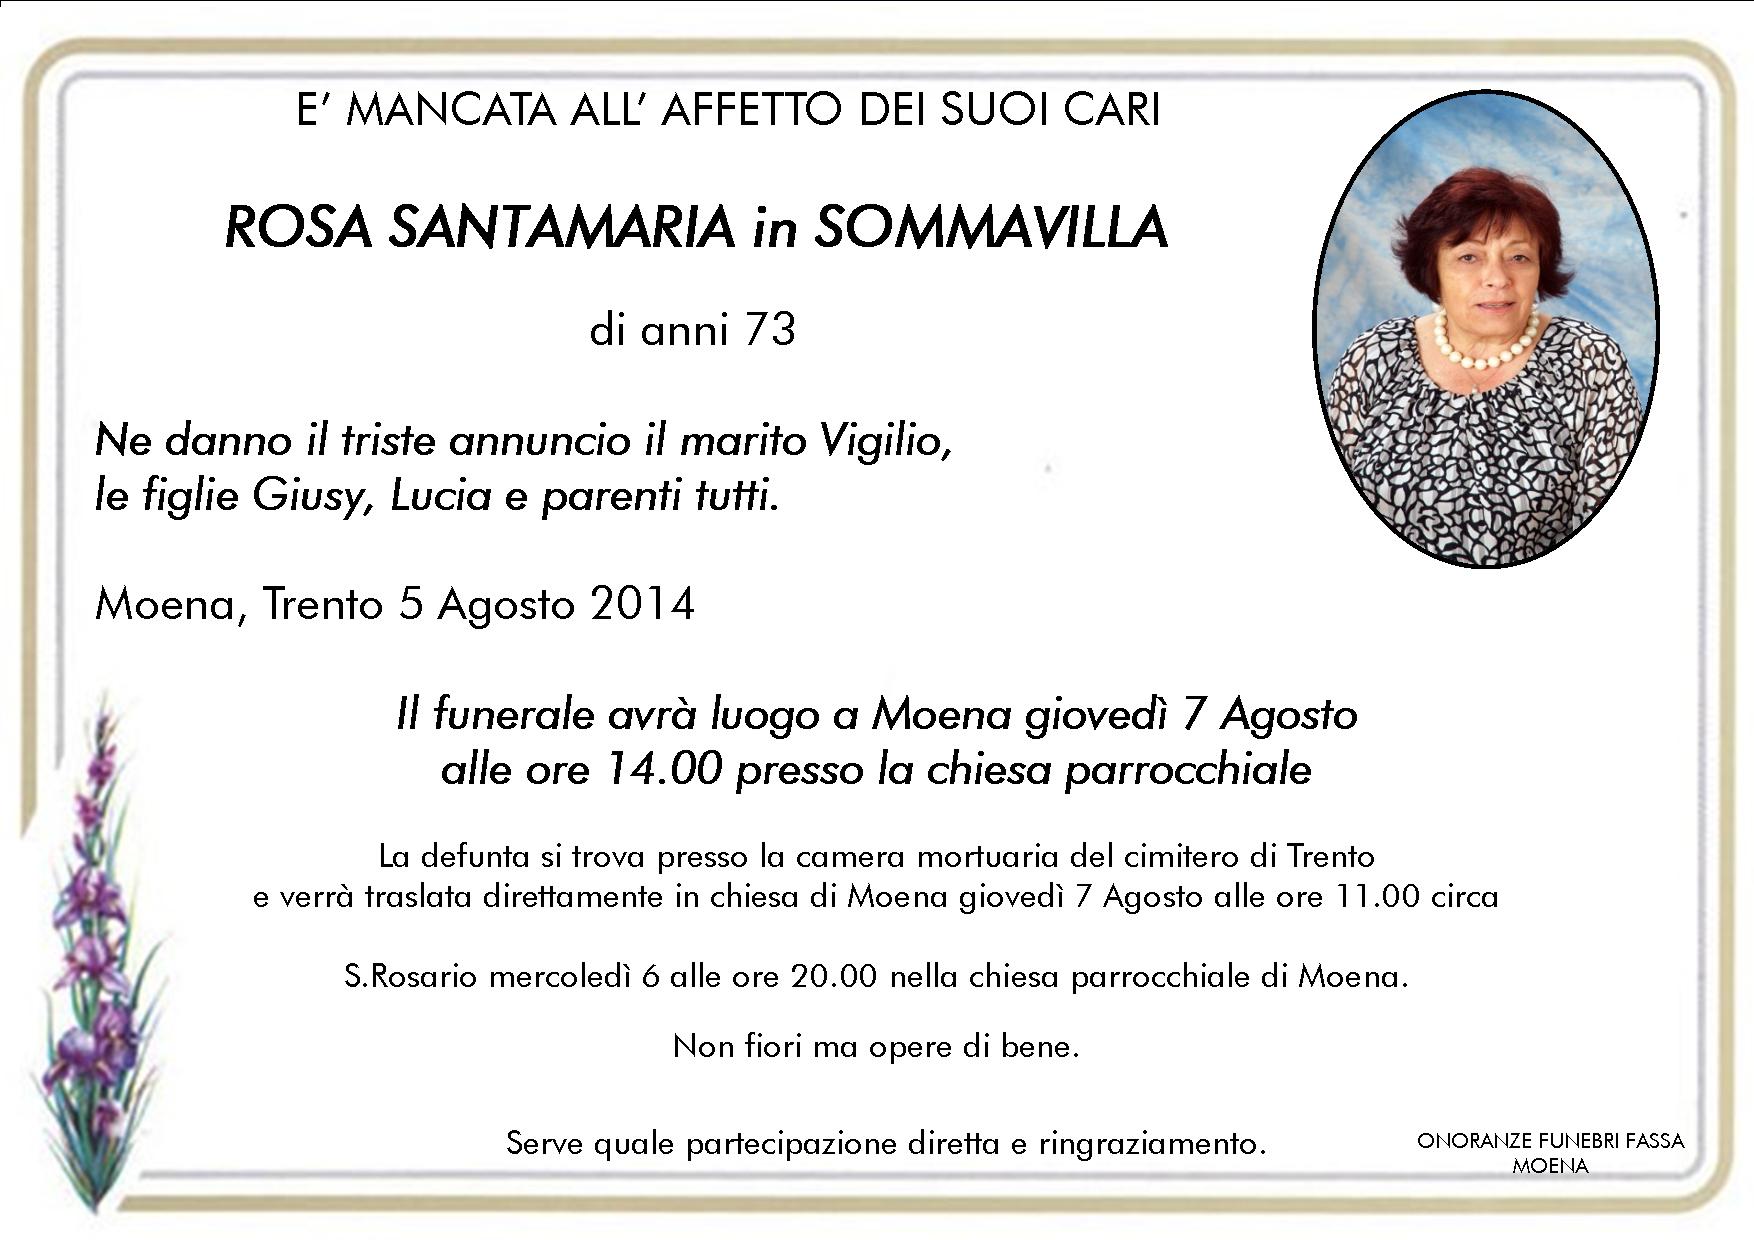 Rosa Santamaria in Sommavilla